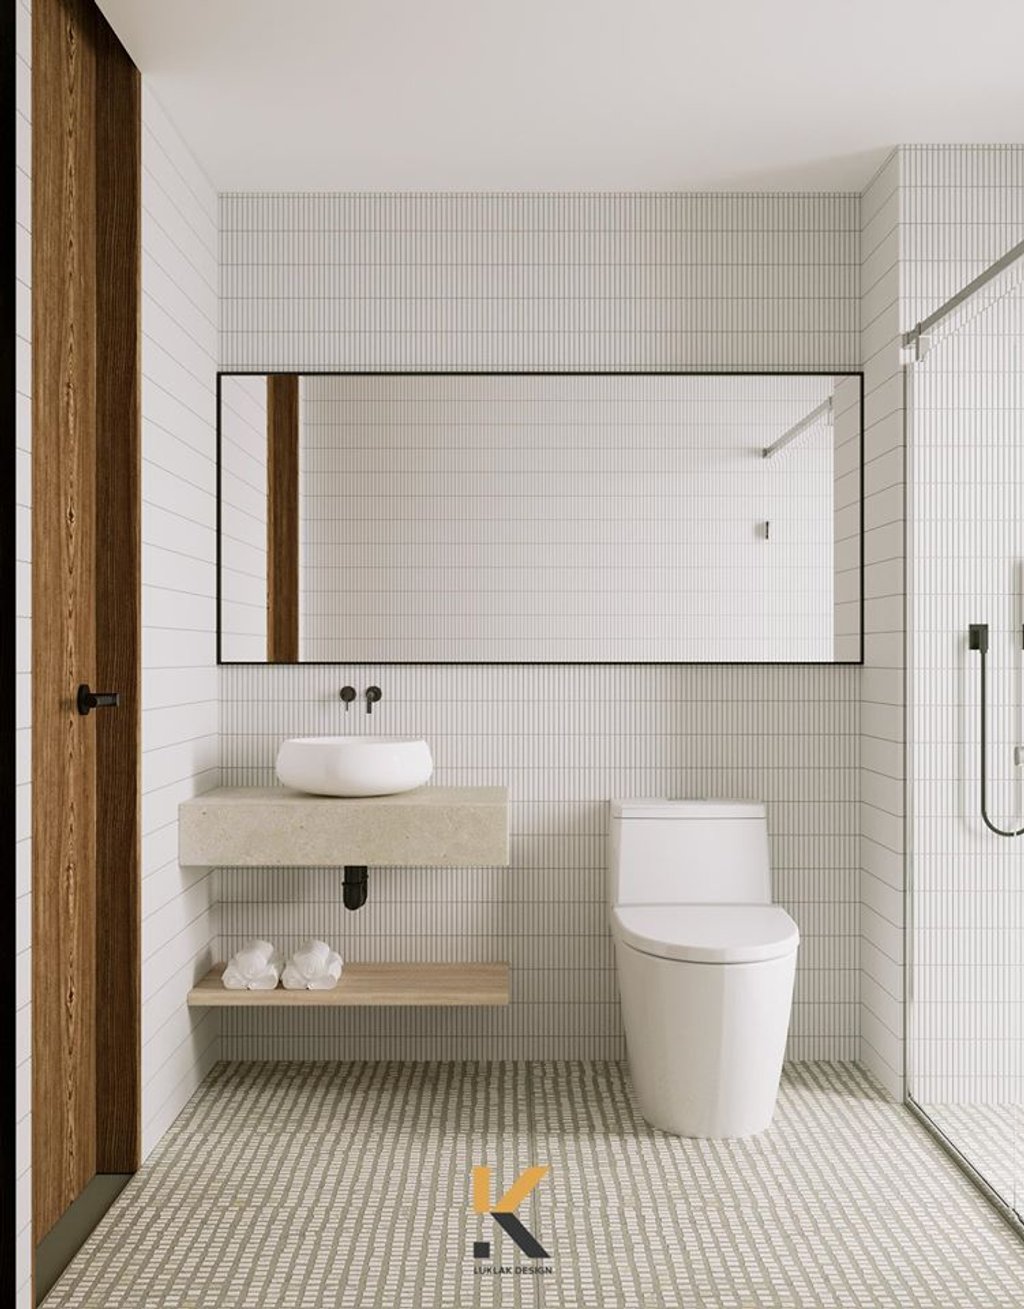 Nhà vệ sinh ở mỗi phòng lại có sự khác biệt. Một bên dùng ốp đá màu xám trầm, một bên sáng rực rỡ và có màu trắng sang trọng.